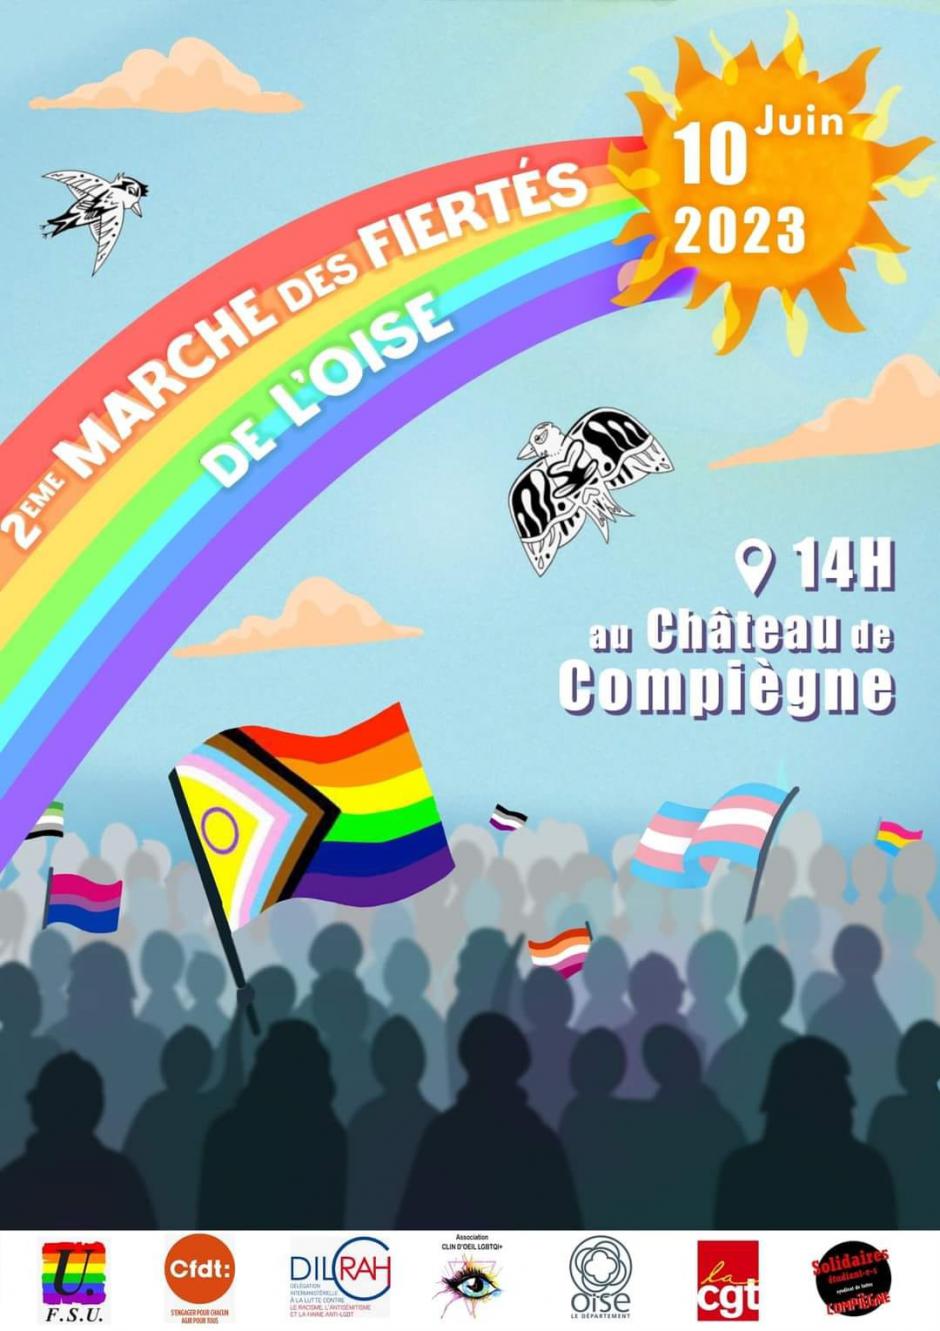 10 juin, Compiègne - 2e Marche des Fiertés